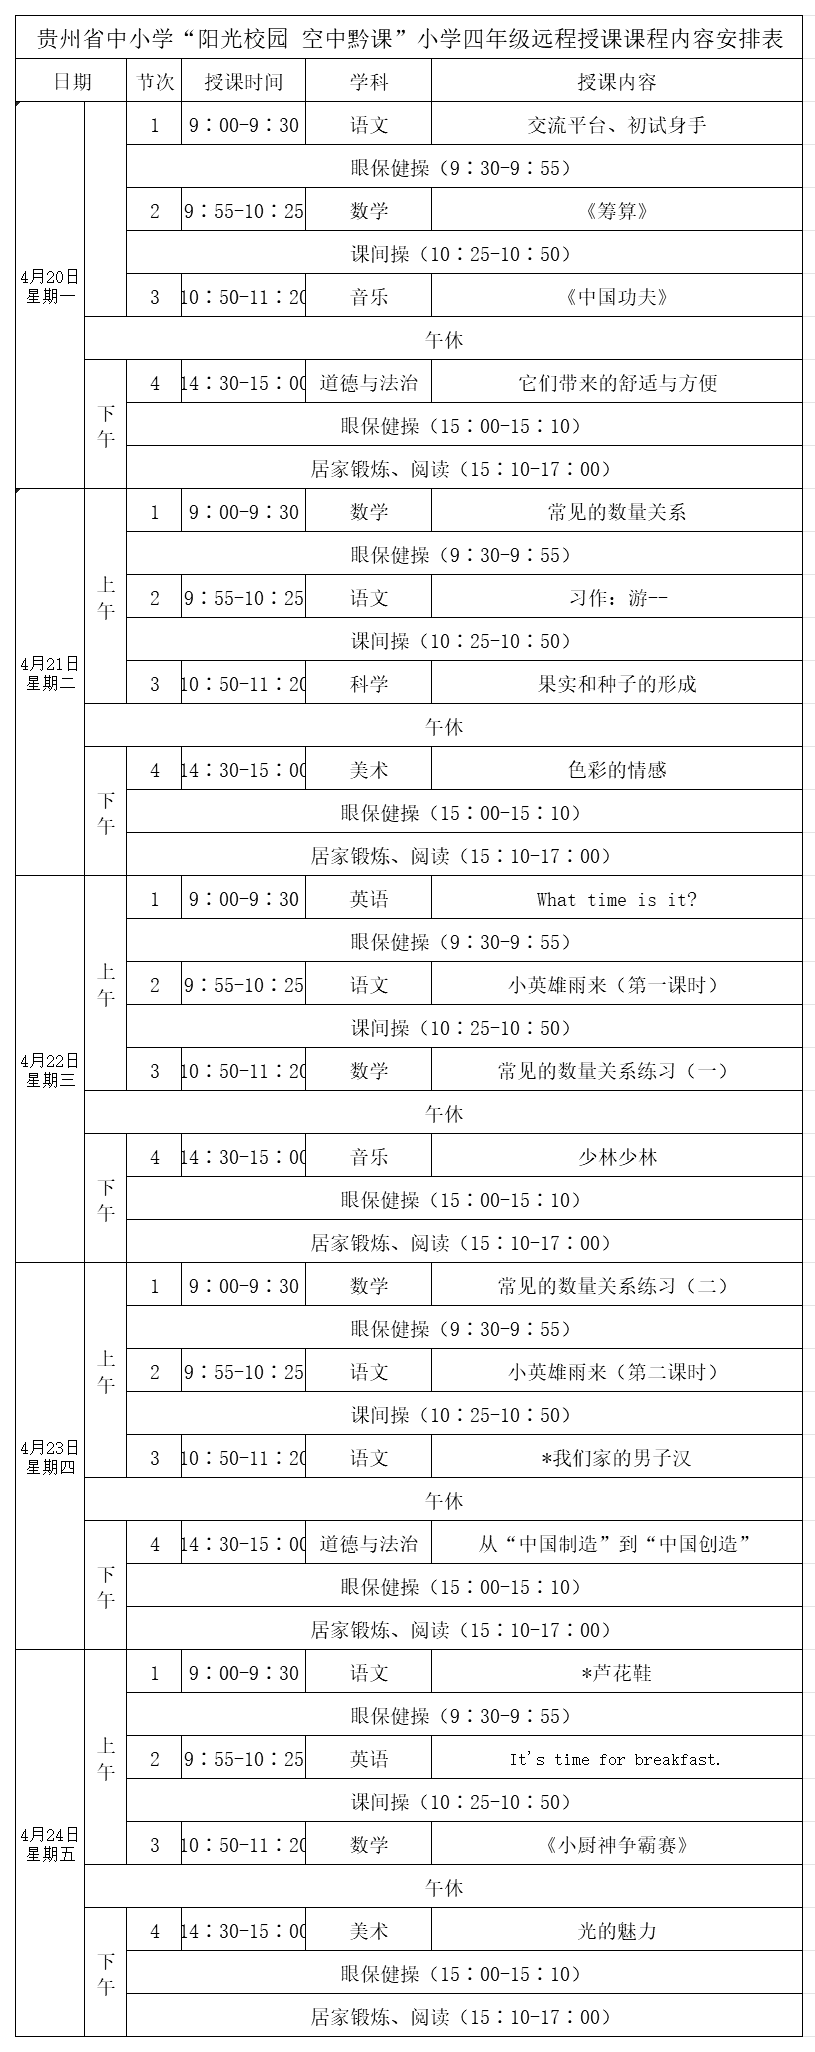 贵州中小学“空中课堂”课程表完整版公布（4月20日12